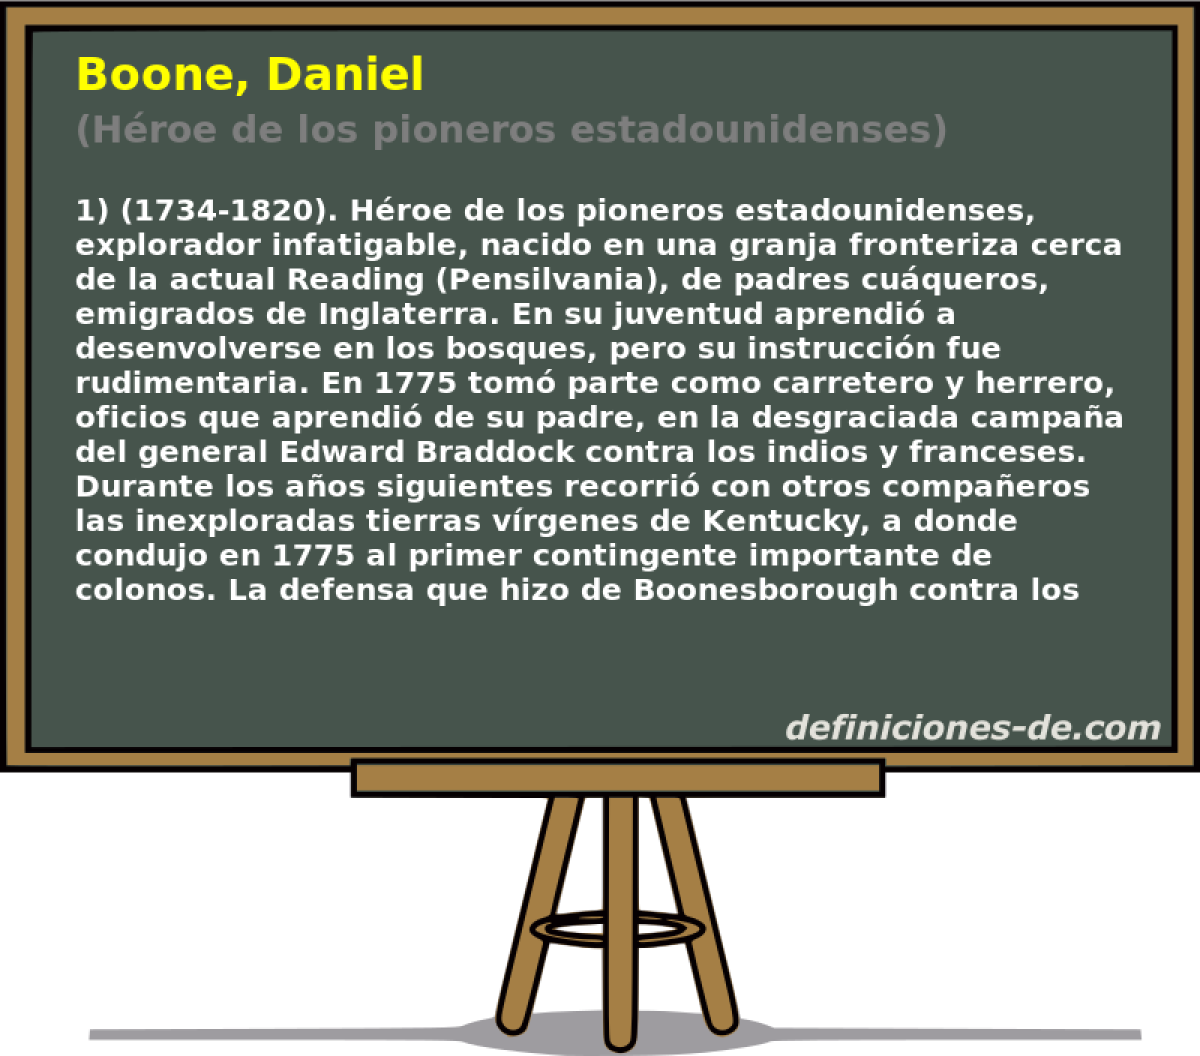 Boone, Daniel (Hroe de los pioneros estadounidenses)